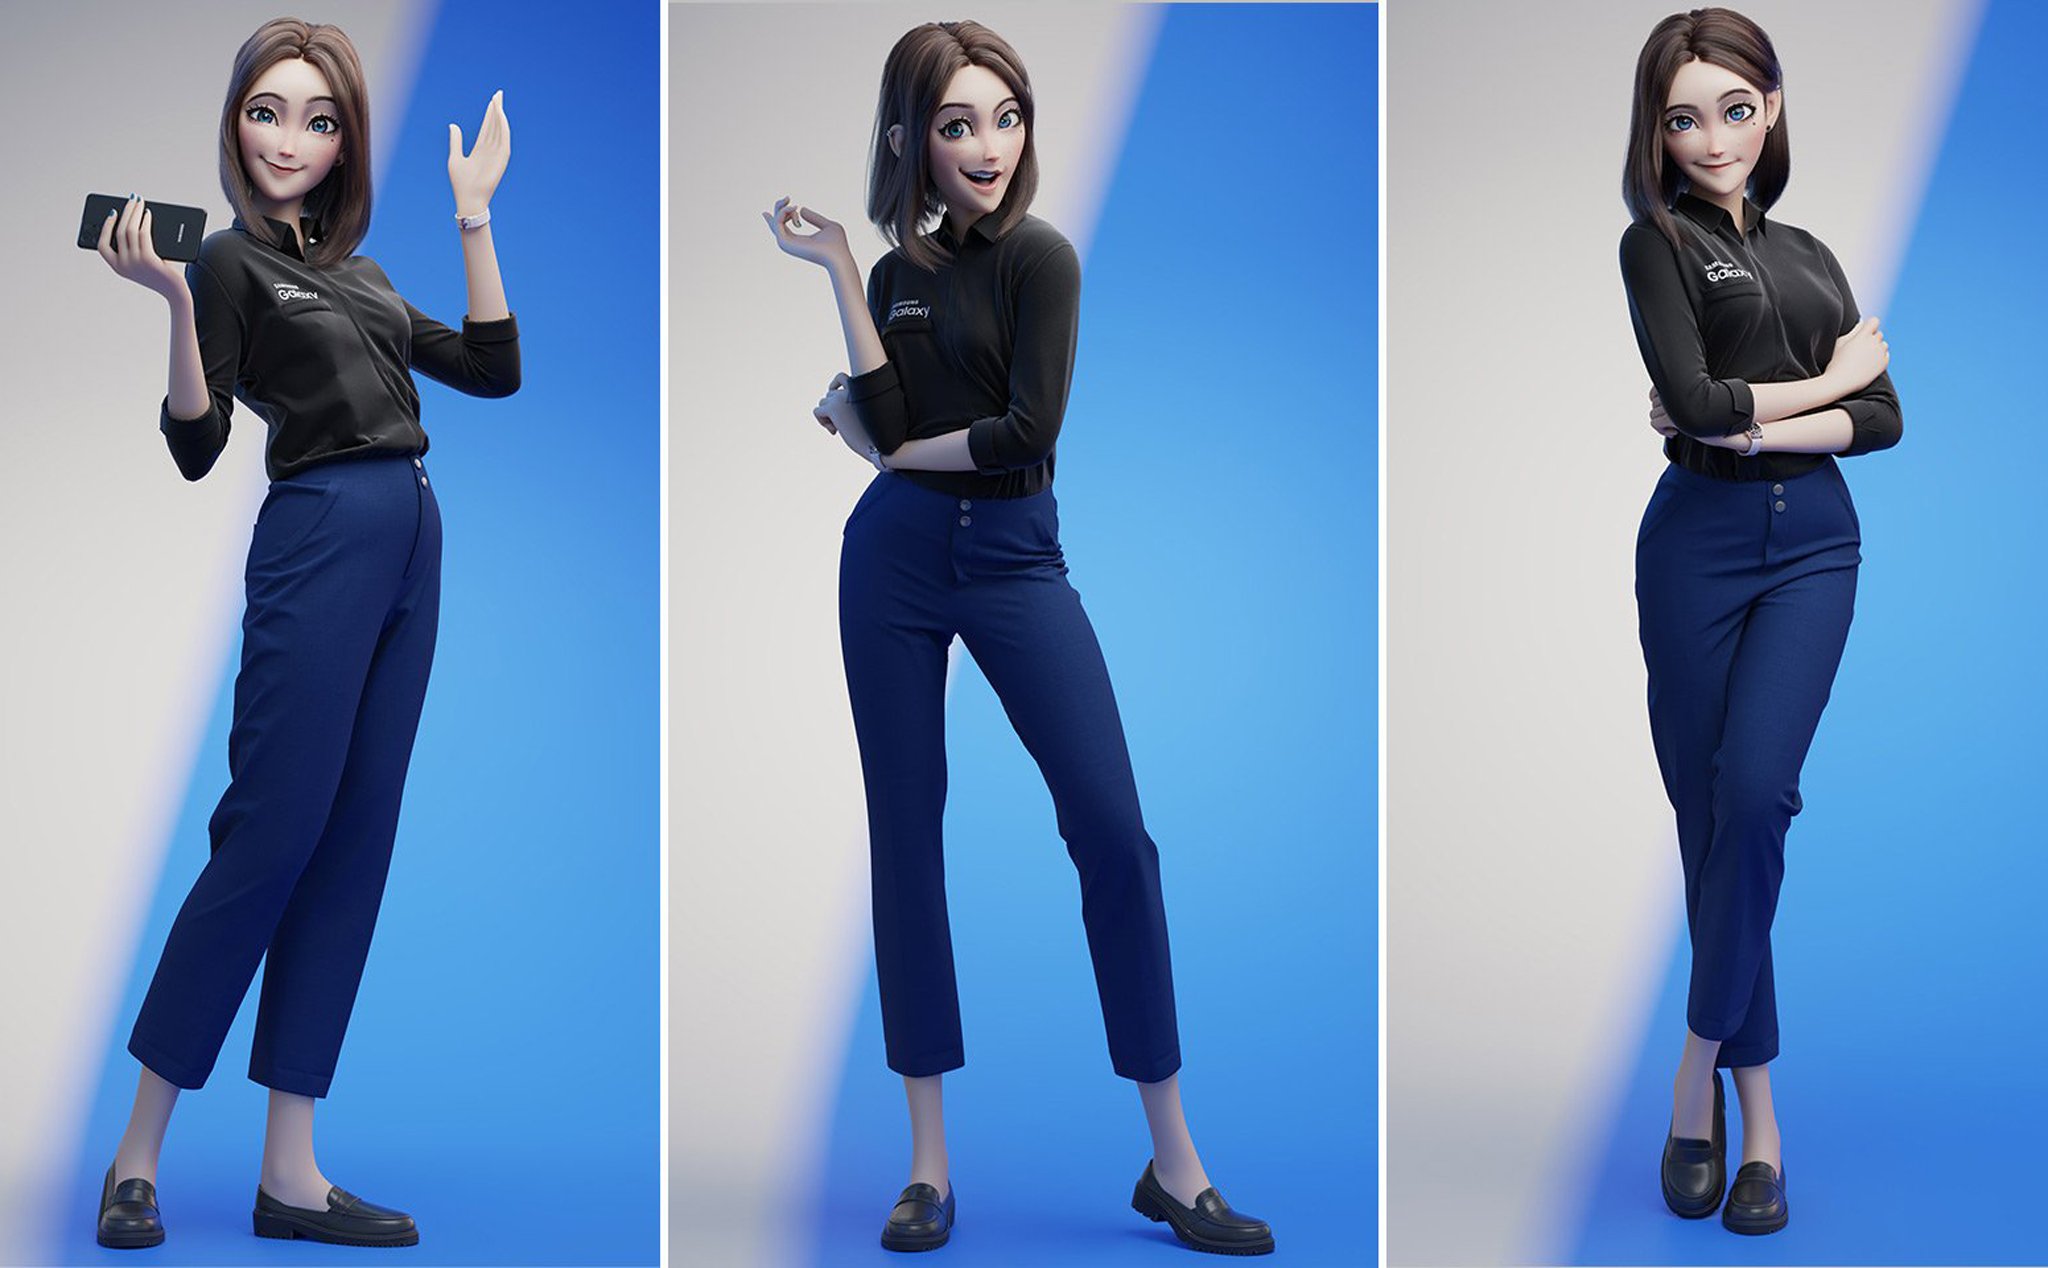 Cộng đồng mạng phát cuồng với hotgirl Sam nhân vật được cho là trợ lý ảo  mới của Samsung